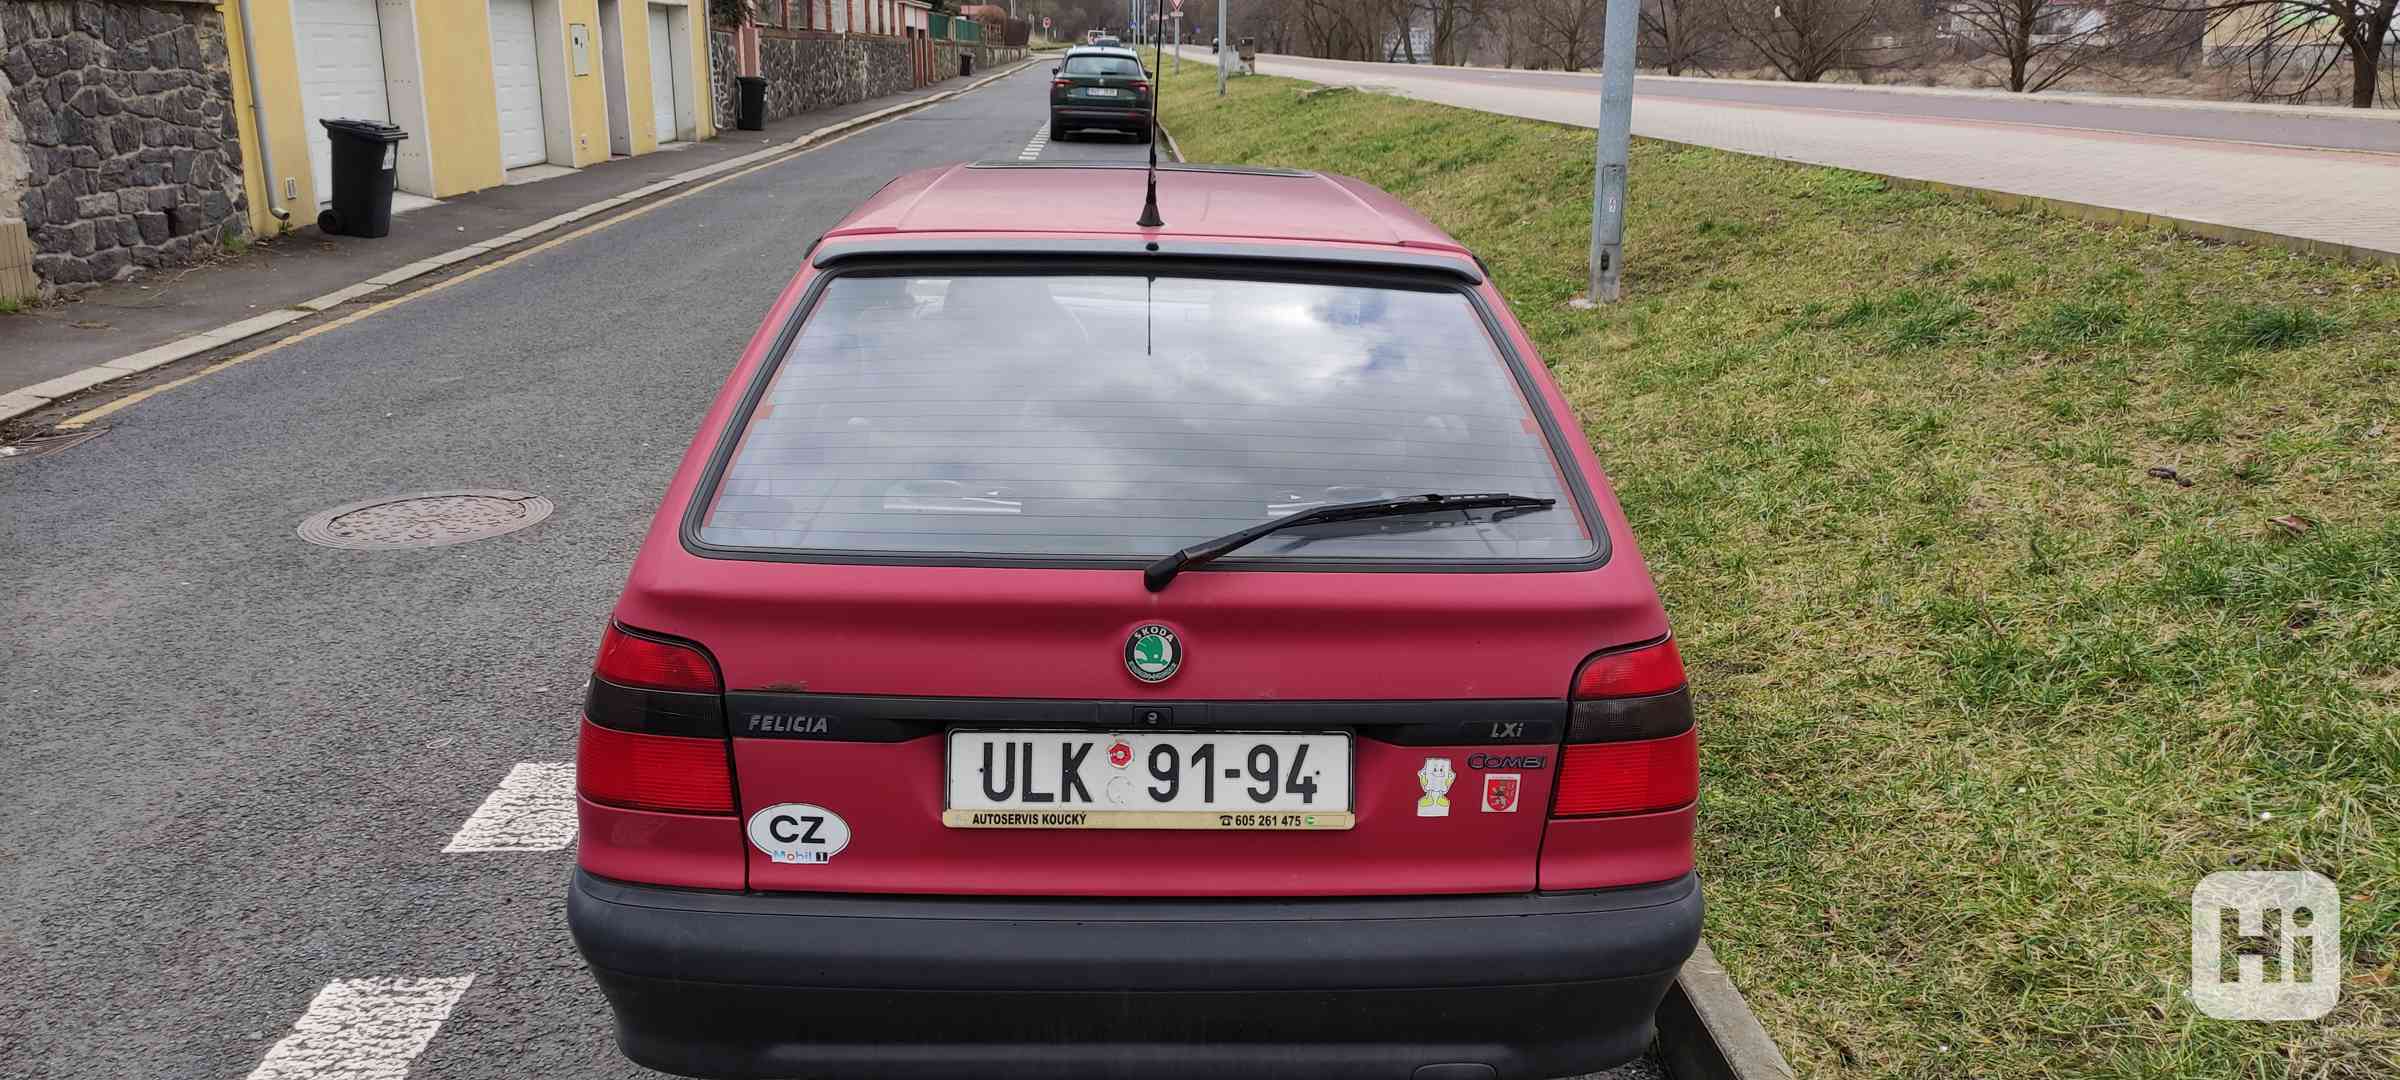 Škoda Felicia 1.3 s nízkým nájezdem - foto 1